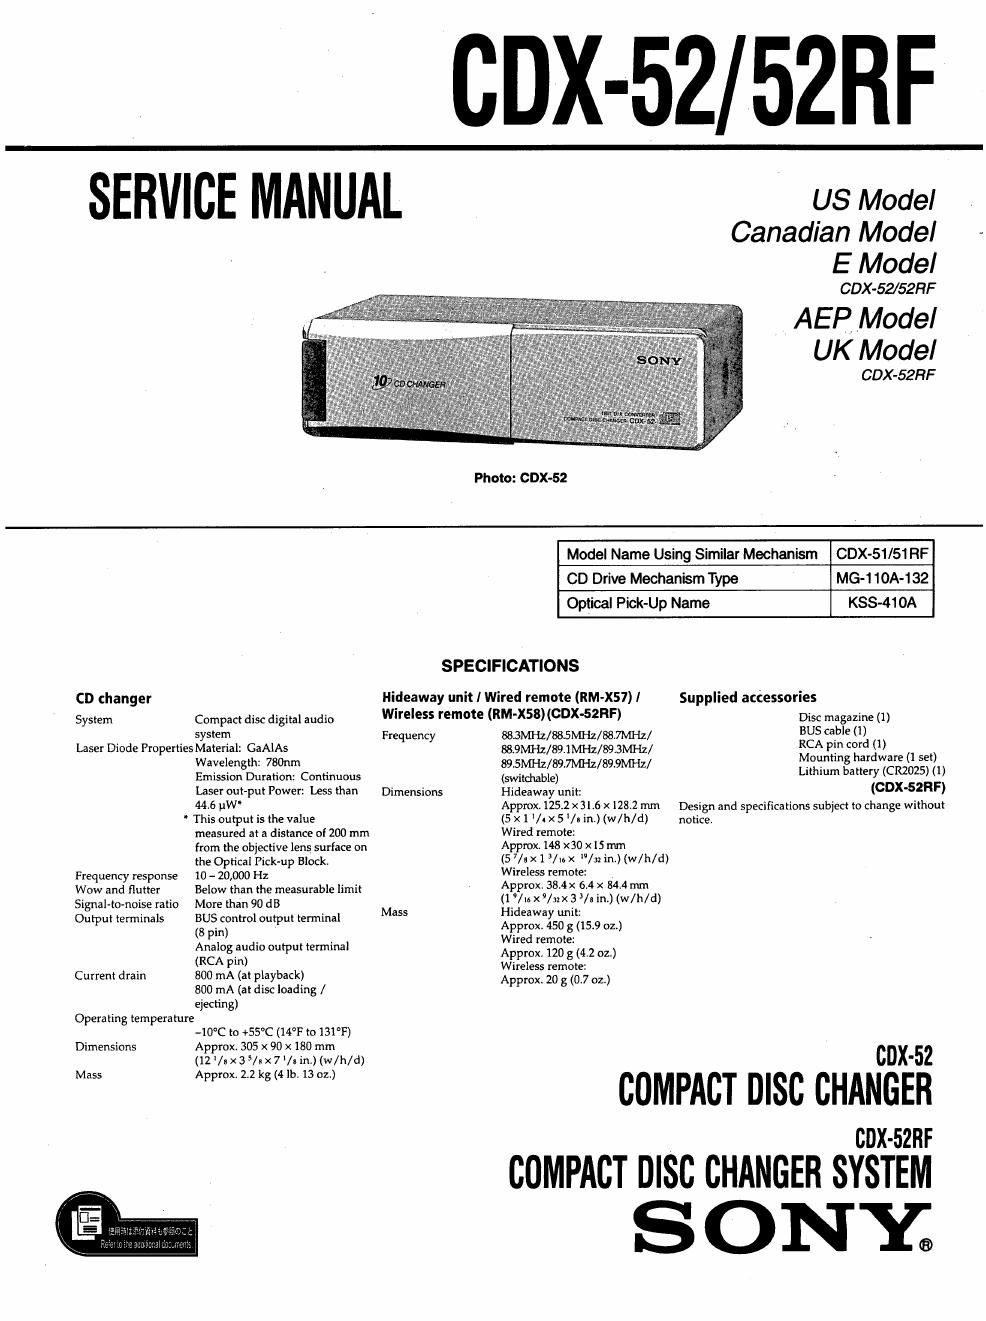 sony cdx 52 service manual